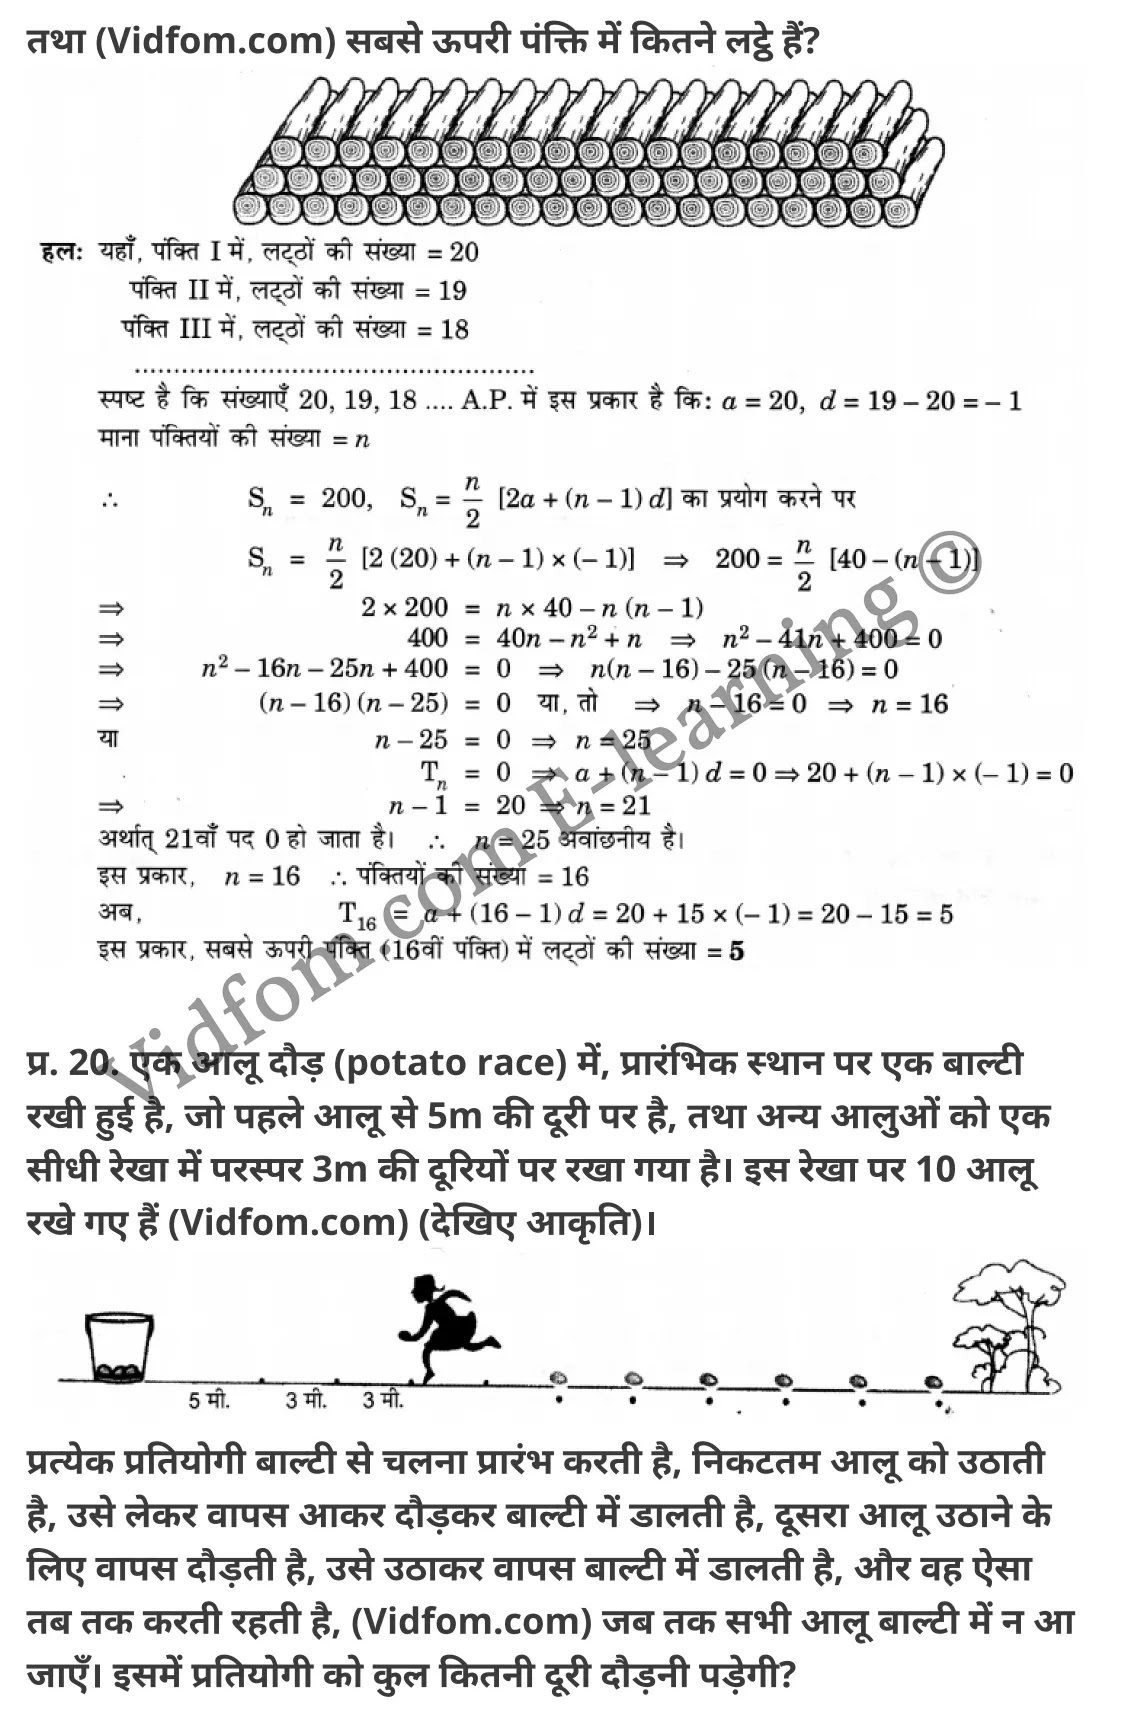 कक्षा 10 गणित  के नोट्स  हिंदी में एनसीईआरटी समाधान,     class 10 Maths chapter 5,   class 10 Maths chapter 5 ncert solutions in Maths,  class 10 Maths chapter 5 notes in hindi,   class 10 Maths chapter 5 question answer,   class 10 Maths chapter 5 notes,   class 10 Maths chapter 5 class 10 Maths  chapter 5 in  hindi,    class 10 Maths chapter 5 important questions in  hindi,   class 10 Maths hindi  chapter 5 notes in hindi,   class 10 Maths  chapter 5 test,   class 10 Maths  chapter 5 class 10 Maths  chapter 5 pdf,   class 10 Maths  chapter 5 notes pdf,   class 10 Maths  chapter 5 exercise solutions,  class 10 Maths  chapter 5,  class 10 Maths  chapter 5 notes study rankers,  class 10 Maths  chapter 5 notes,   class 10 Maths hindi  chapter 5 notes,    class 10 Maths   chapter 5  class 10  notes pdf,  class 10 Maths  chapter 5 class 10  notes  ncert,  class 10 Maths  chapter 5 class 10 pdf,   class 10 Maths  chapter 5  book,   class 10 Maths  chapter 5 quiz class 10  ,    10  th class 10 Maths chapter 5  book up board,   up board 10  th class 10 Maths chapter 5 notes,  class 10 Maths,   class 10 Maths ncert solutions in Maths,   class 10 Maths notes in hindi,   class 10 Maths question answer,   class 10 Maths notes,  class 10 Maths class 10 Maths  chapter 5 in  hindi,    class 10 Maths important questions in  hindi,   class 10 Maths notes in hindi,    class 10 Maths test,  class 10 Maths class 10 Maths  chapter 5 pdf,   class 10 Maths notes pdf,   class 10 Maths exercise solutions,   class 10 Maths,  class 10 Maths notes study rankers,   class 10 Maths notes,  class 10 Maths notes,   class 10 Maths  class 10  notes pdf,   class 10 Maths class 10  notes  ncert,   class 10 Maths class 10 pdf,   class 10 Maths  book,  class 10 Maths quiz class 10  ,  10  th class 10 Maths    book up board,    up board 10  th class 10 Maths notes,      कक्षा 10 गणित अध्याय 5 ,  कक्षा 10 गणित, कक्षा 10 गणित अध्याय 5  के नोट्स हिंदी में,  कक्षा 10 का गणित अध्याय 5 का प्रश्न उत्तर,  कक्षा 10 गणित अध्याय 5  के नोट्स,  10 कक्षा गणित  हिंदी में, कक्षा 10 गणित अध्याय 5  हिंदी में,  कक्षा 10 गणित अध्याय 5  महत्वपूर्ण प्रश्न हिंदी में, कक्षा 10   हिंदी के नोट्स  हिंदी में, गणित हिंदी  कक्षा 10 नोट्स pdf,    गणित हिंदी  कक्षा 10 नोट्स 2021 ncert,  गणित हिंदी  कक्षा 10 pdf,   गणित हिंदी  पुस्तक,   गणित हिंदी की बुक,   गणित हिंदी  प्रश्नोत्तरी class 10 ,  10   वीं गणित  पुस्तक up board,   बिहार बोर्ड 10  पुस्तक वीं गणित नोट्स,    गणित  कक्षा 10 नोट्स 2021 ncert,   गणित  कक्षा 10 pdf,   गणित  पुस्तक,   गणित की बुक,   गणित  प्रश्नोत्तरी class 10,   कक्षा 10 गणित,  कक्षा 10 गणित  के नोट्स हिंदी में,  कक्षा 10 का गणित का प्रश्न उत्तर,  कक्षा 10 गणित  के नोट्स, 10 कक्षा गणित 2021  हिंदी में, कक्षा 10 गणित  हिंदी में, कक्षा 10 गणित  महत्वपूर्ण प्रश्न हिंदी में, कक्षा 10 गणित  हिंदी के नोट्स  हिंदी में, गणित हिंदी  कक्षा 10 नोट्स pdf,   गणित हिंदी  कक्षा 10 नोट्स 2021 ncert,   गणित हिंदी  कक्षा 10 pdf,  गणित हिंदी  पुस्तक,   गणित हिंदी की बुक,   गणित हिंदी  प्रश्नोत्तरी class 10 ,  10   वीं गणित  पुस्तक up board,  बिहार बोर्ड 10  पुस्तक वीं गणित नोट्स,    गणित  कक्षा 10 नोट्स 2021 ncert,  गणित  कक्षा 10 pdf,   गणित  पुस्तक,  गणित की बुक,   गणित  प्रश्नोत्तरी   class 10,   10th Maths   book in hindi, 10th Maths notes in hindi, cbse books for class 10  , cbse books in hindi, cbse ncert books, class 10   Maths   notes in hindi,  class 10 Maths hindi ncert solutions, Maths 2020, Maths  2021,